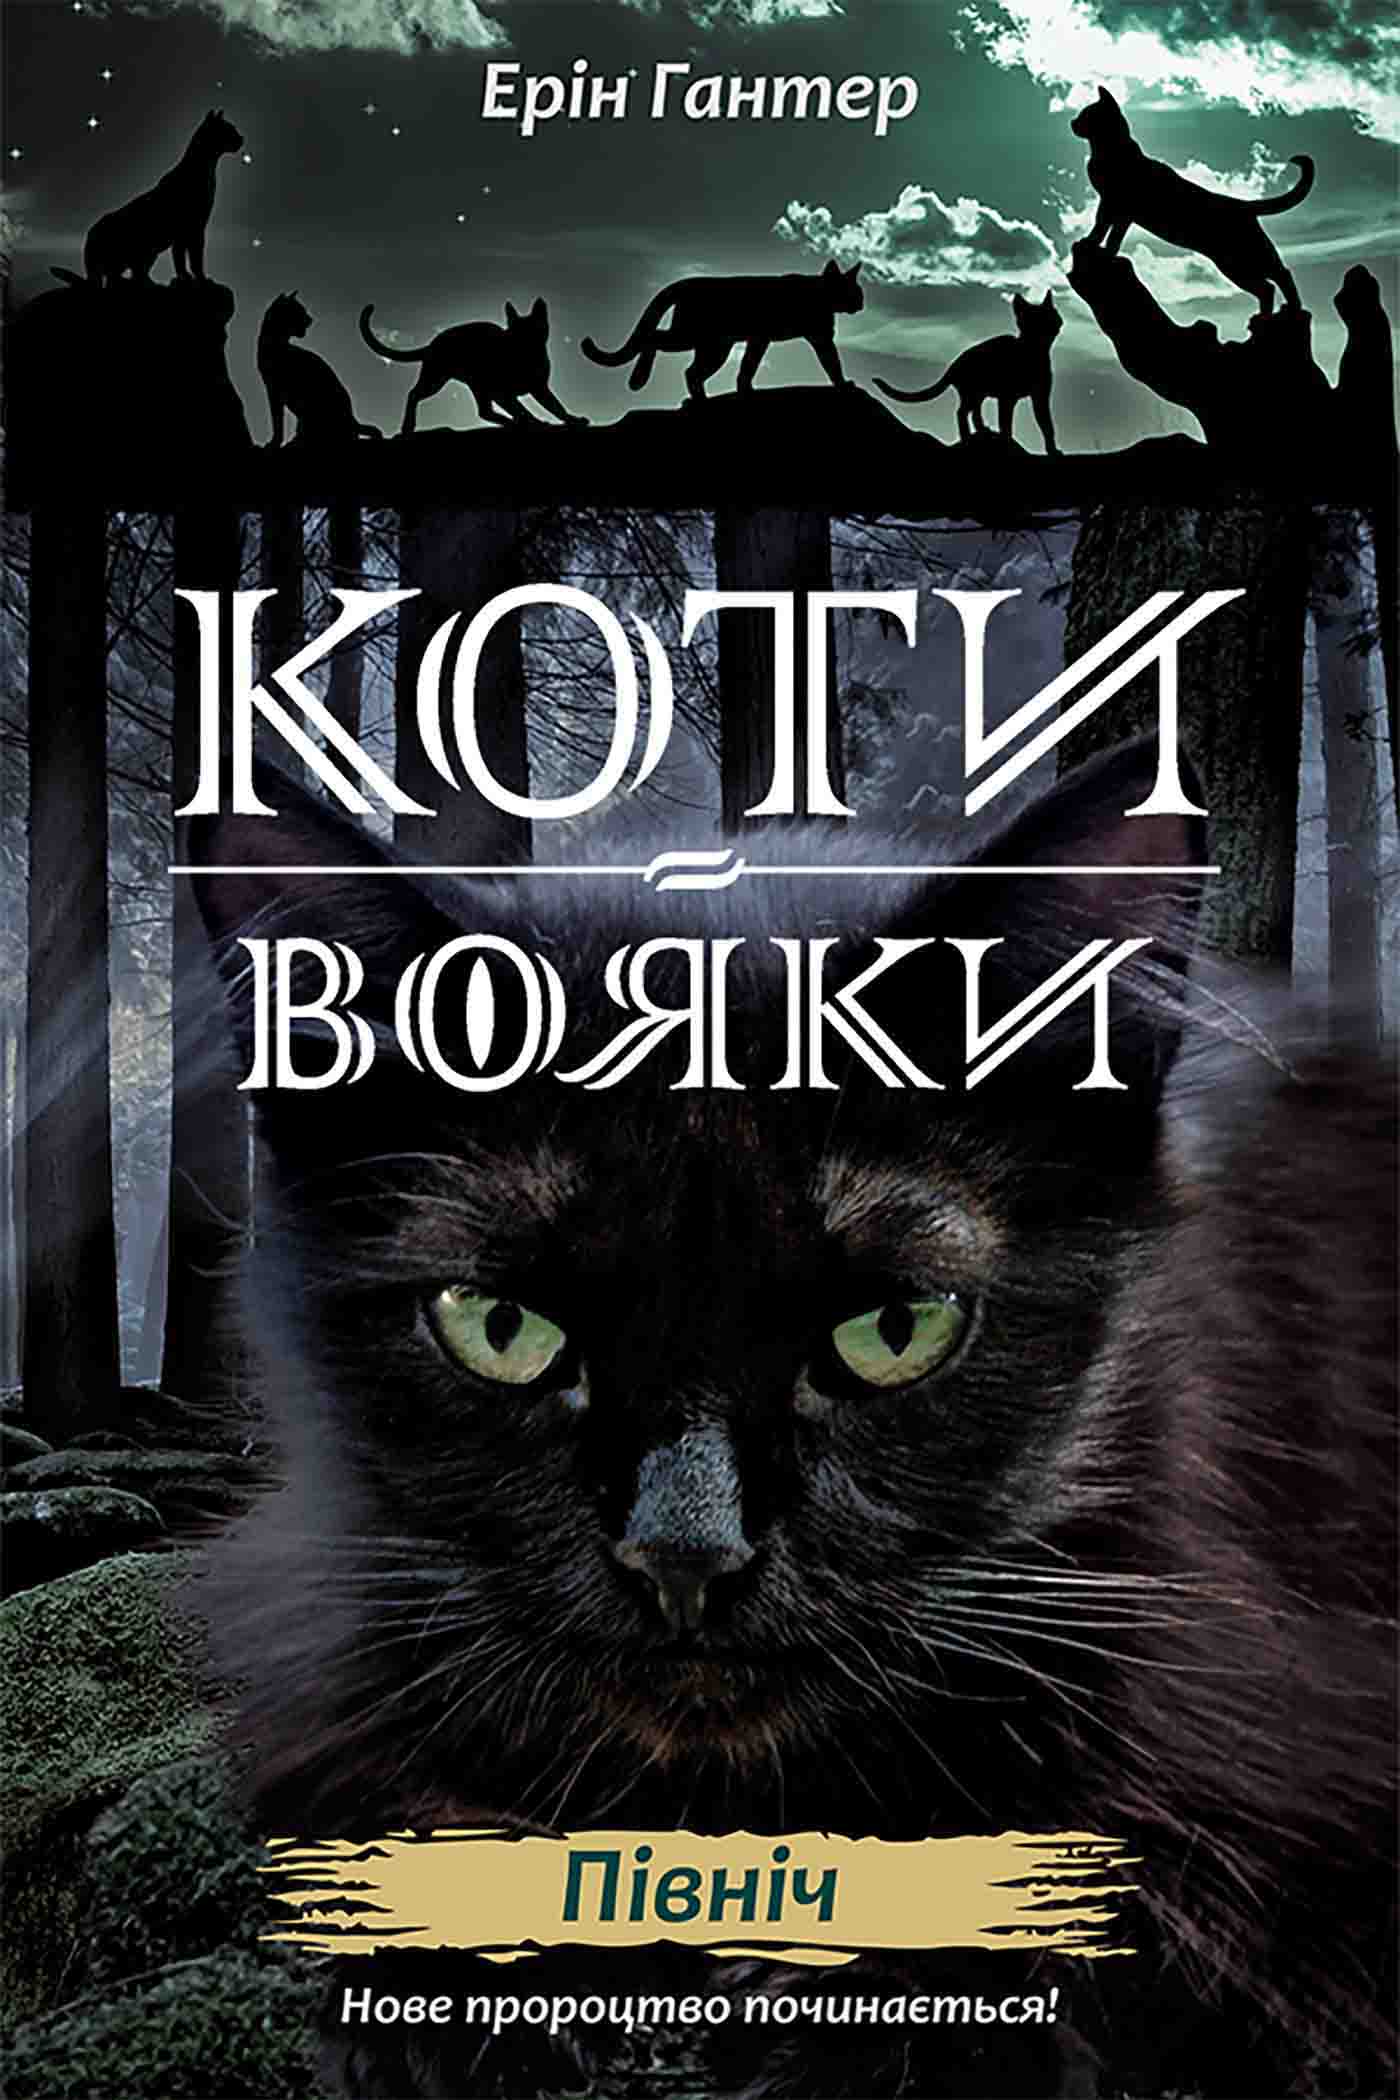 E-book. Коти-вояки. Нове пророцтво. Книга 1. Північ - зображення